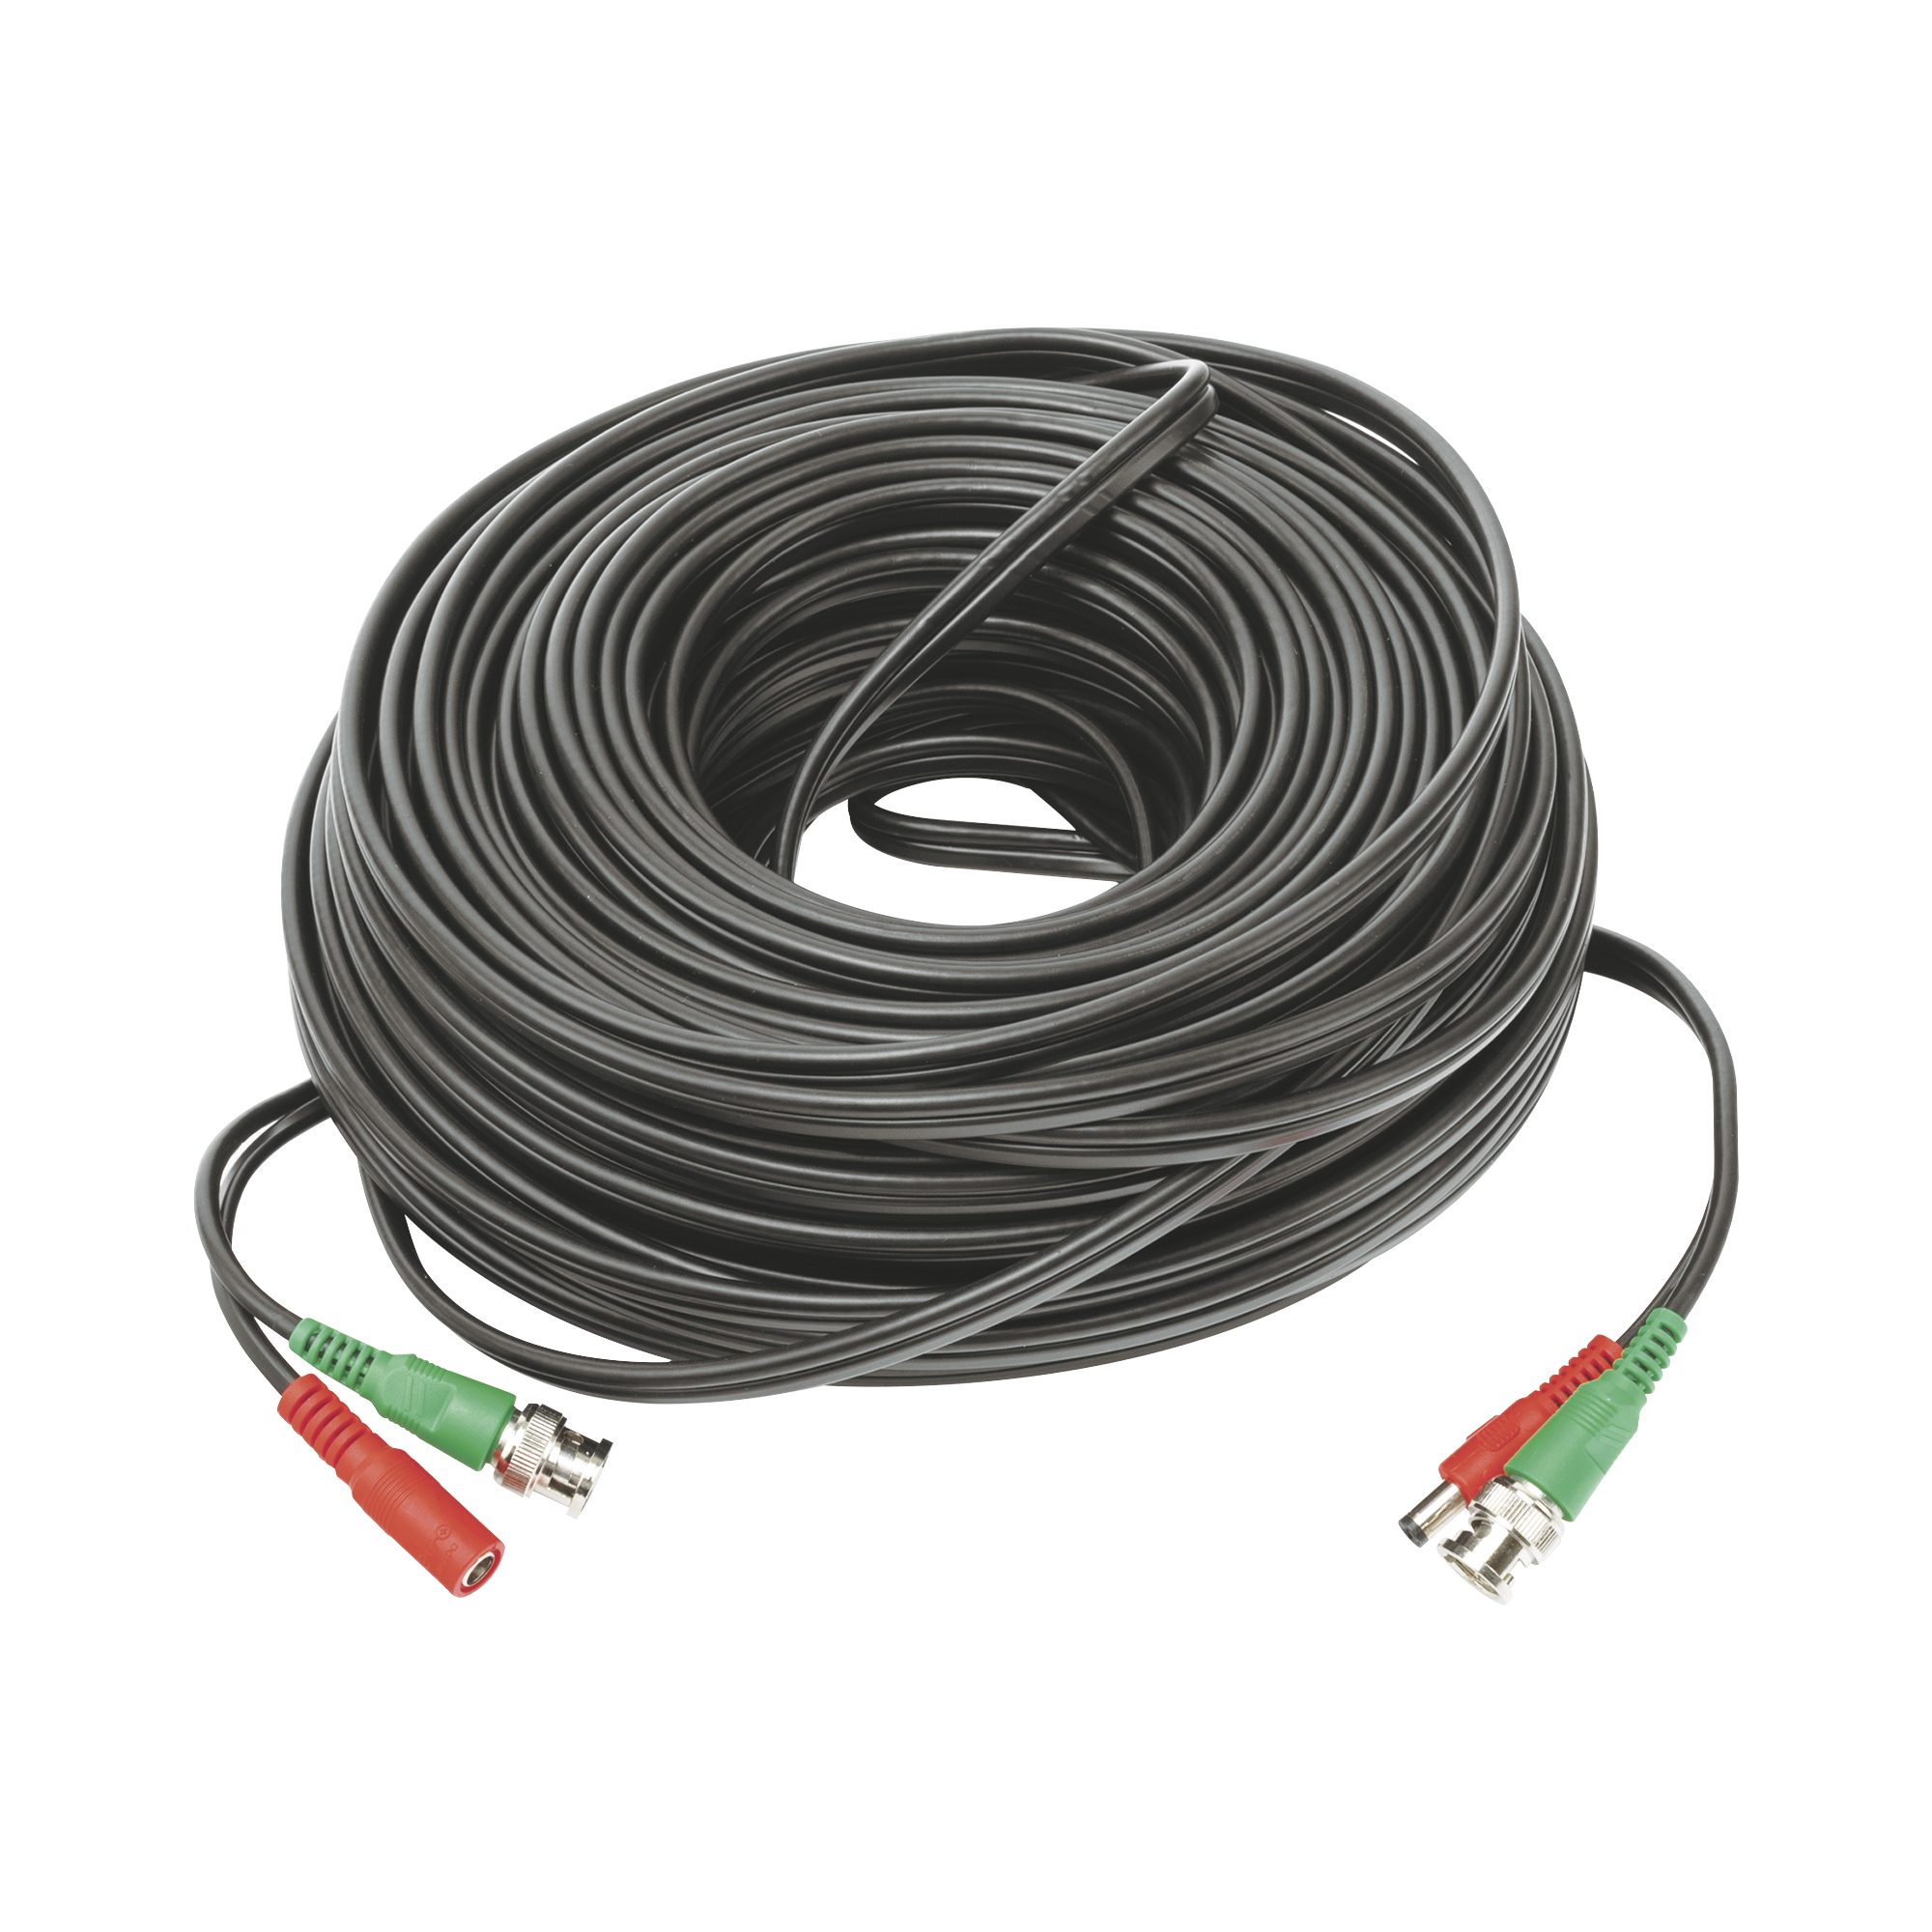 Cable Coaxial Armado con Conector BNC (Video) y Alimentación / Longitud de 40 mts / Optimizado para Cámaras 4K / Uso en Interior